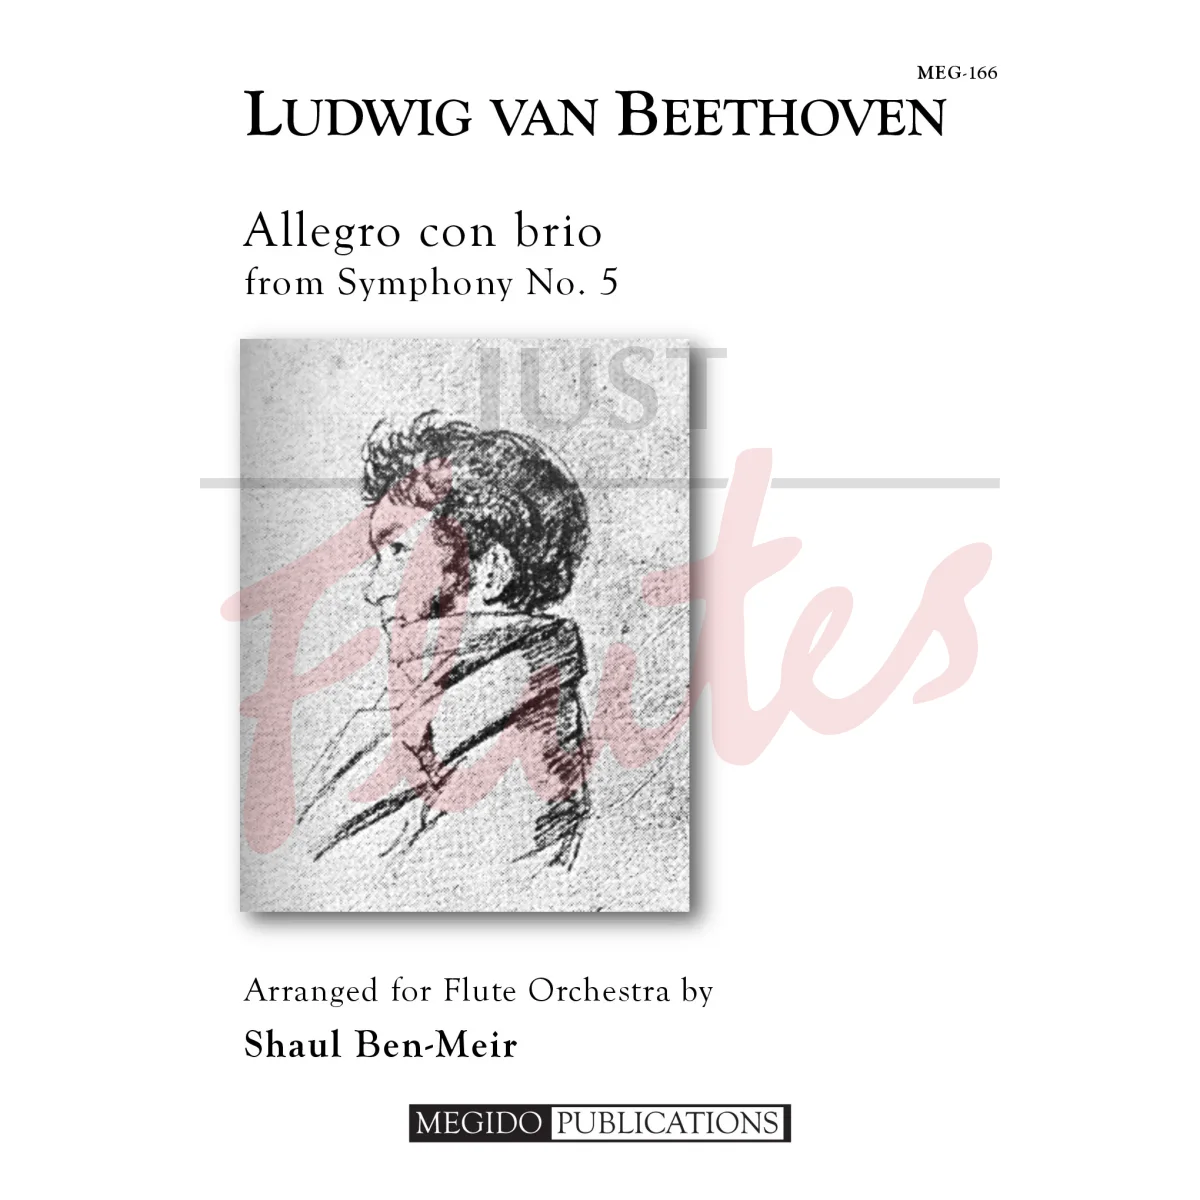 Allegro con brio from Symphony No. 5 for Flute Orchestra